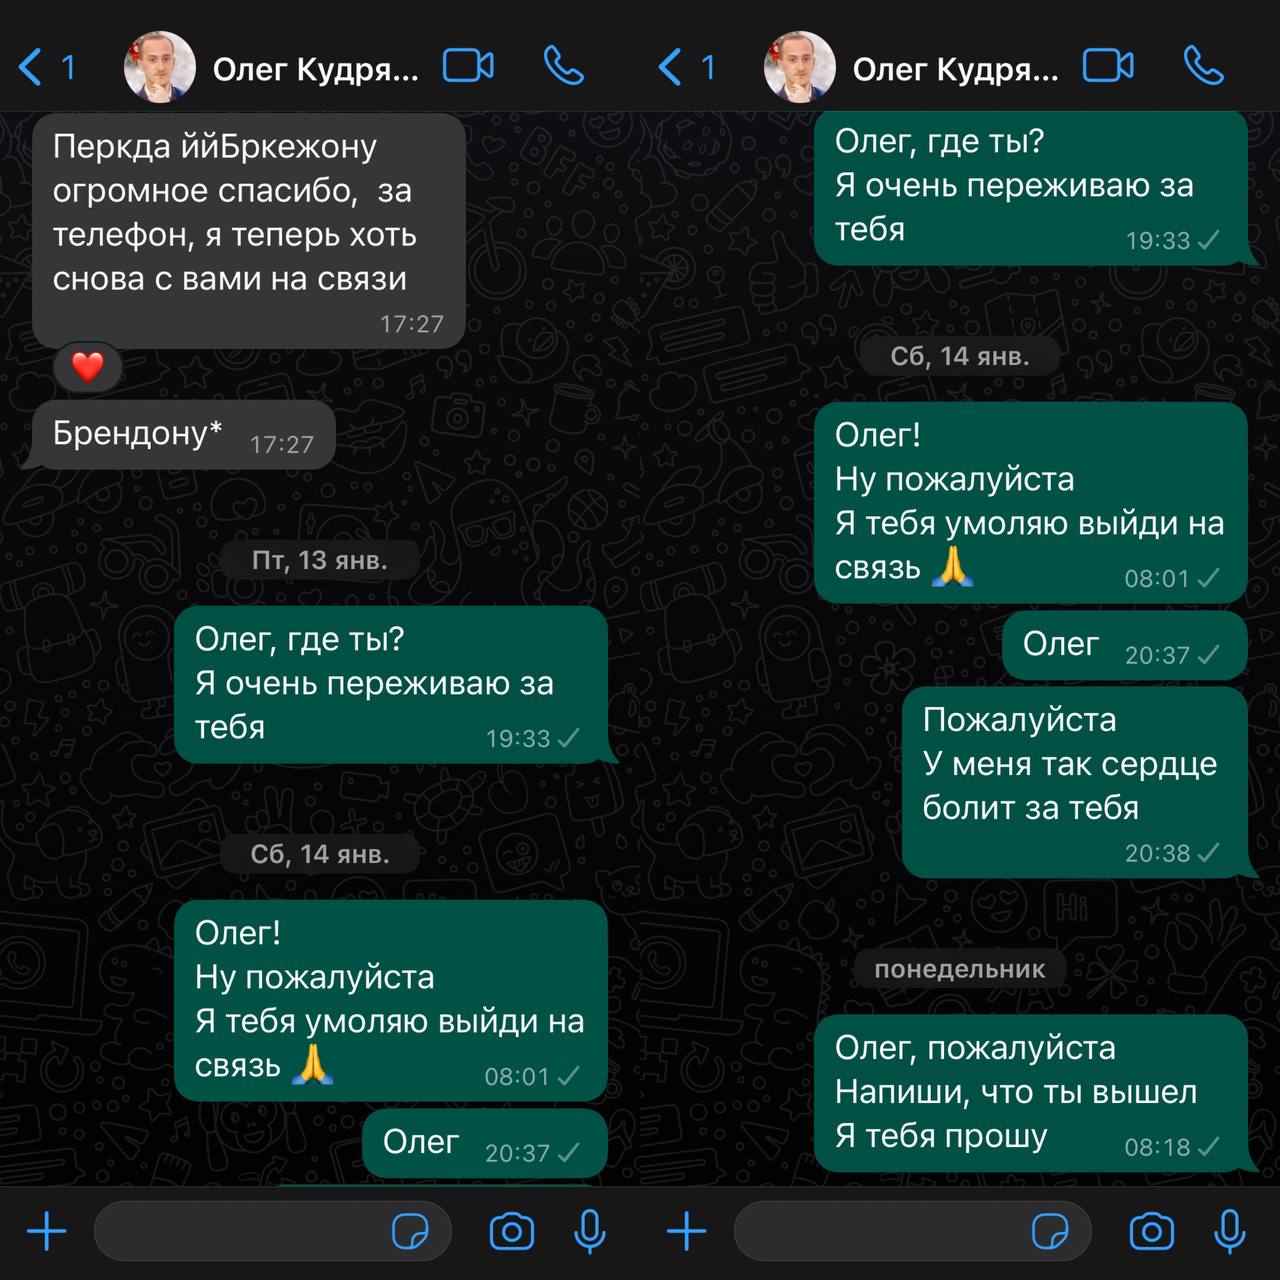 Останні повідомлення між Ольгою Зайцевою та Олегом Кудрявцевим у січні 2023 року